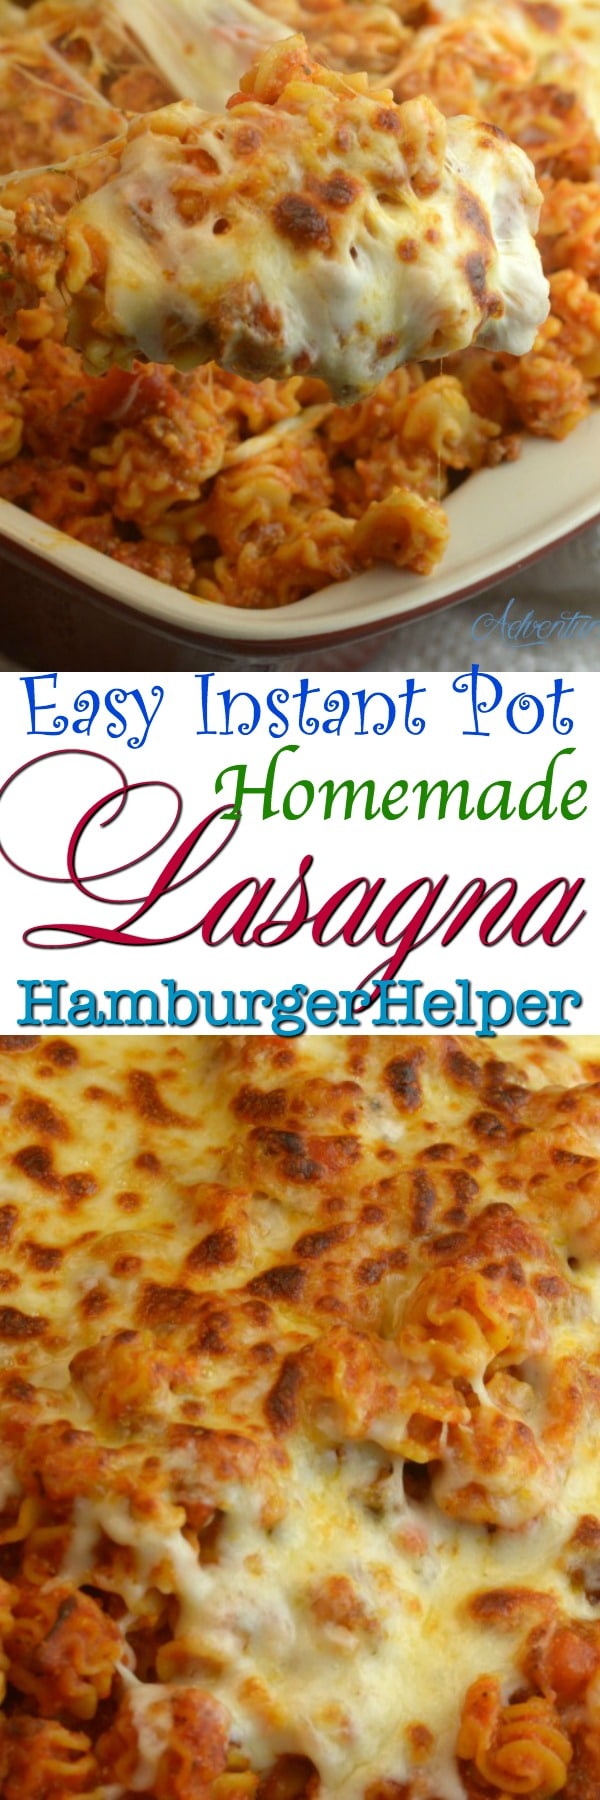 hamburger helper instructions lasagna